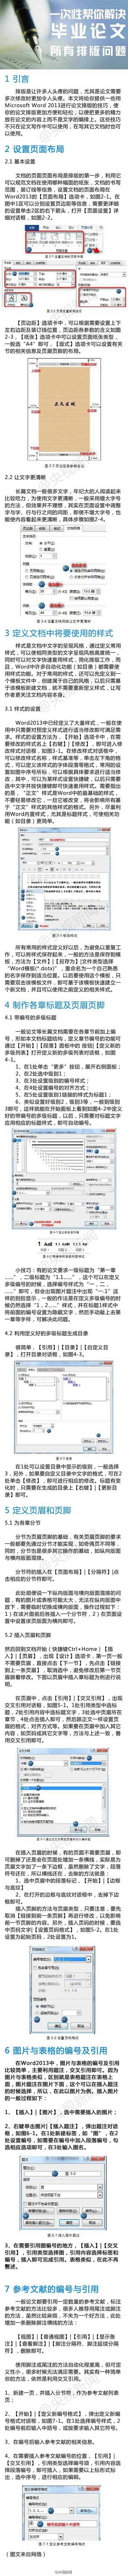 华中科技大学SNC-公共主页